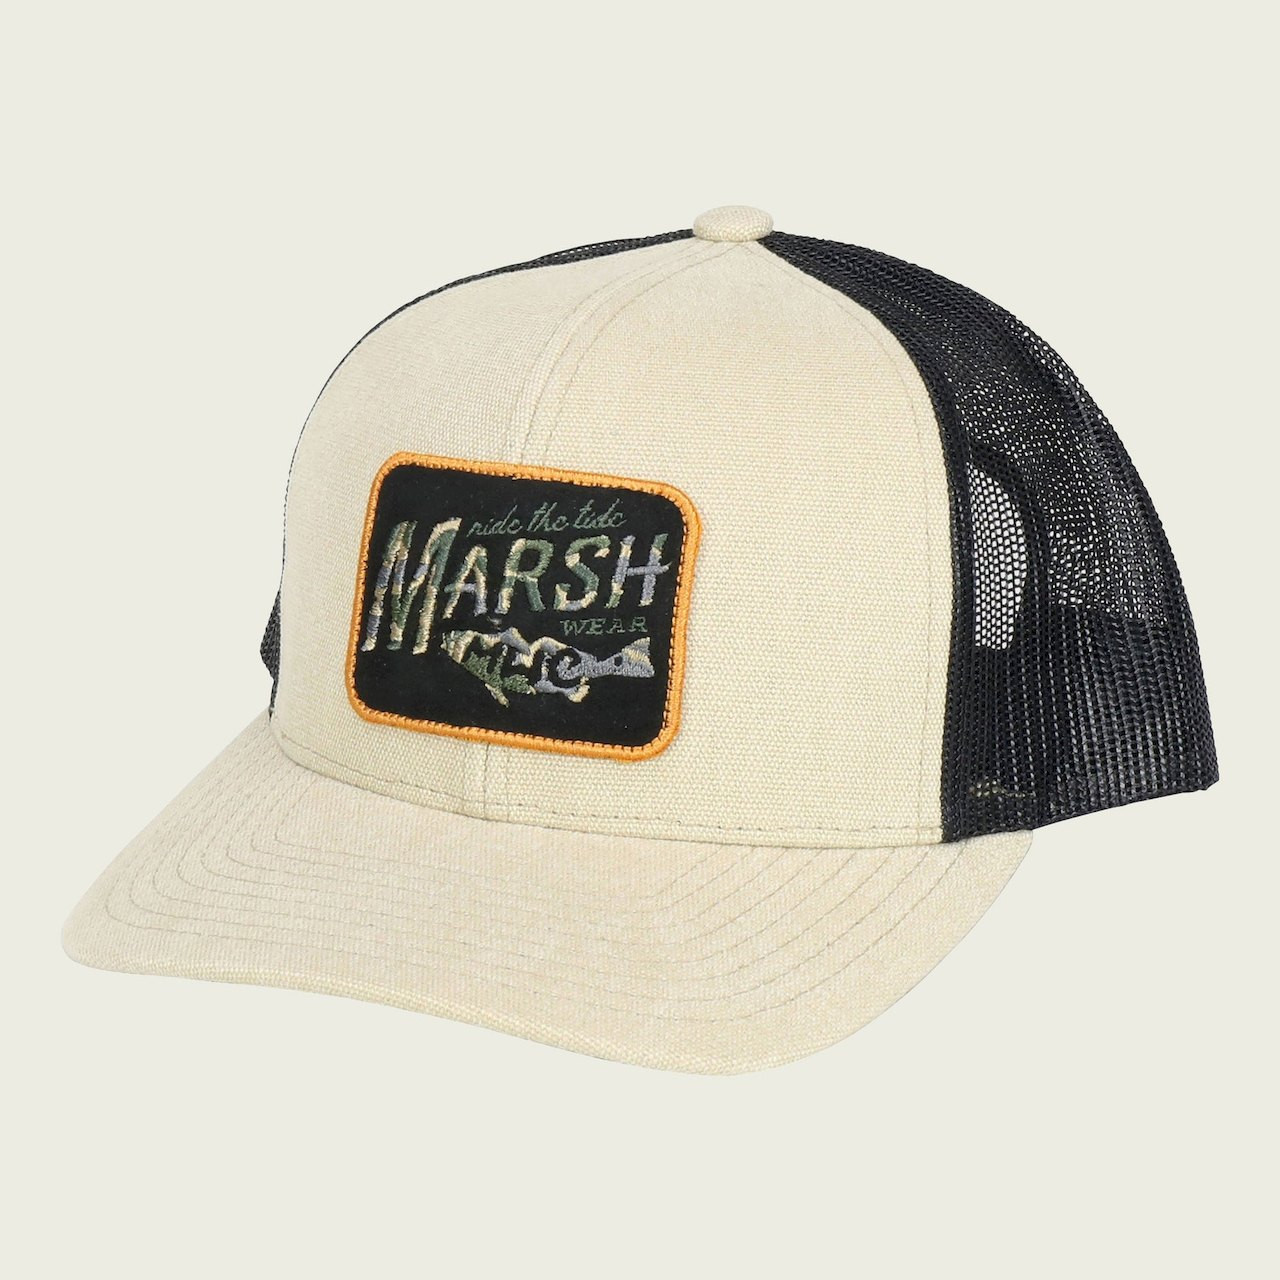 Marsh Wear MWC1008 Sunrise Marsh Trucker Hat Stone - Front